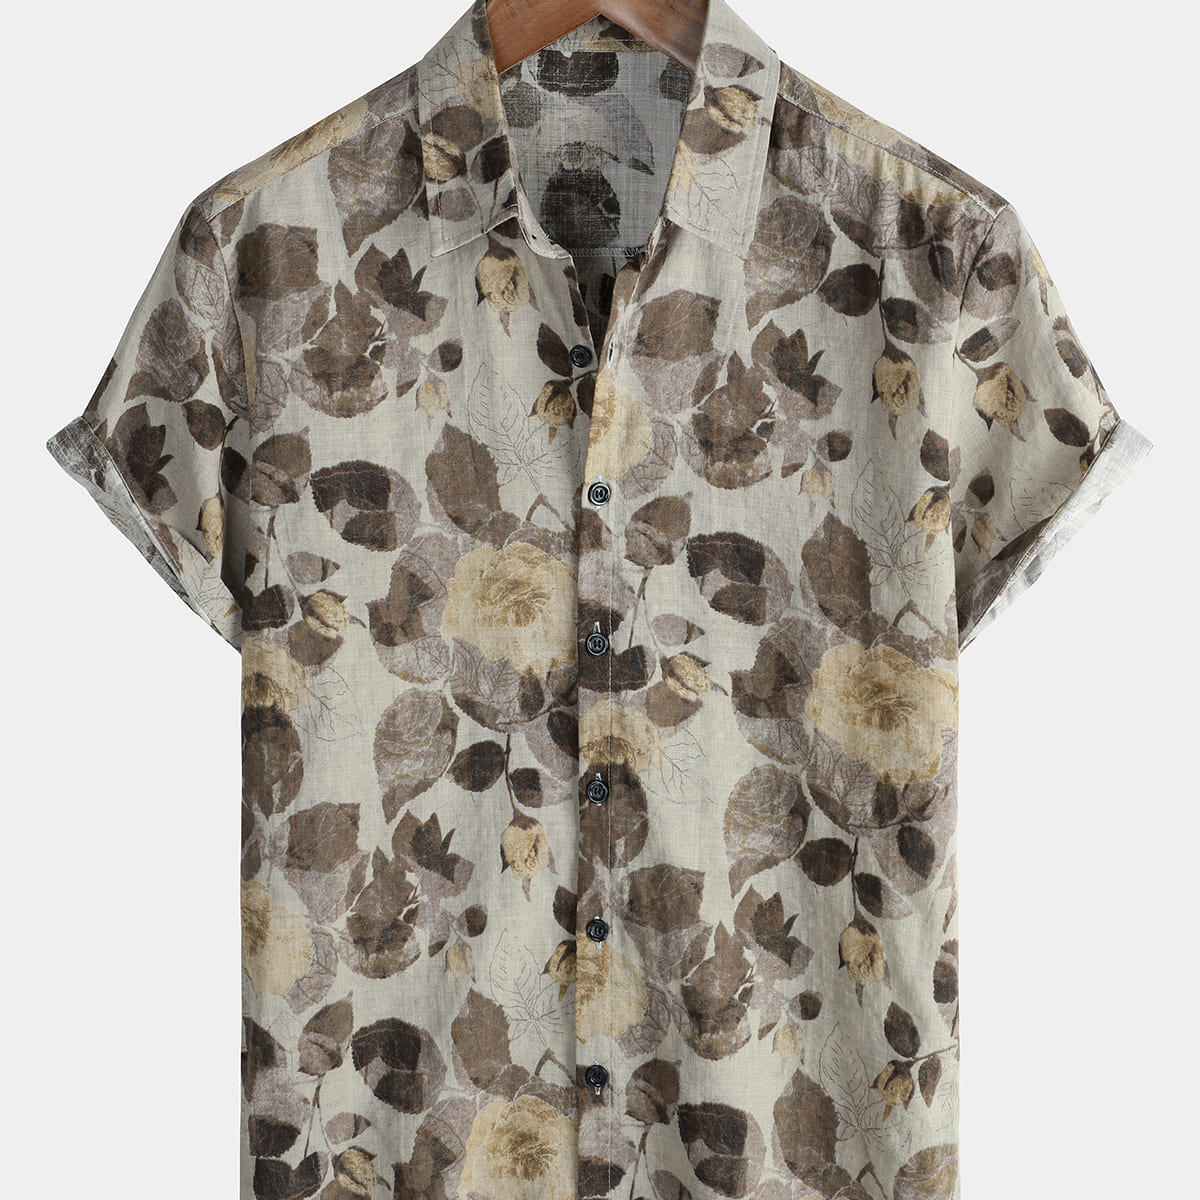 Men's Floral Vintage Short Sleeve Retro Beach Cotton Button Up Shirt